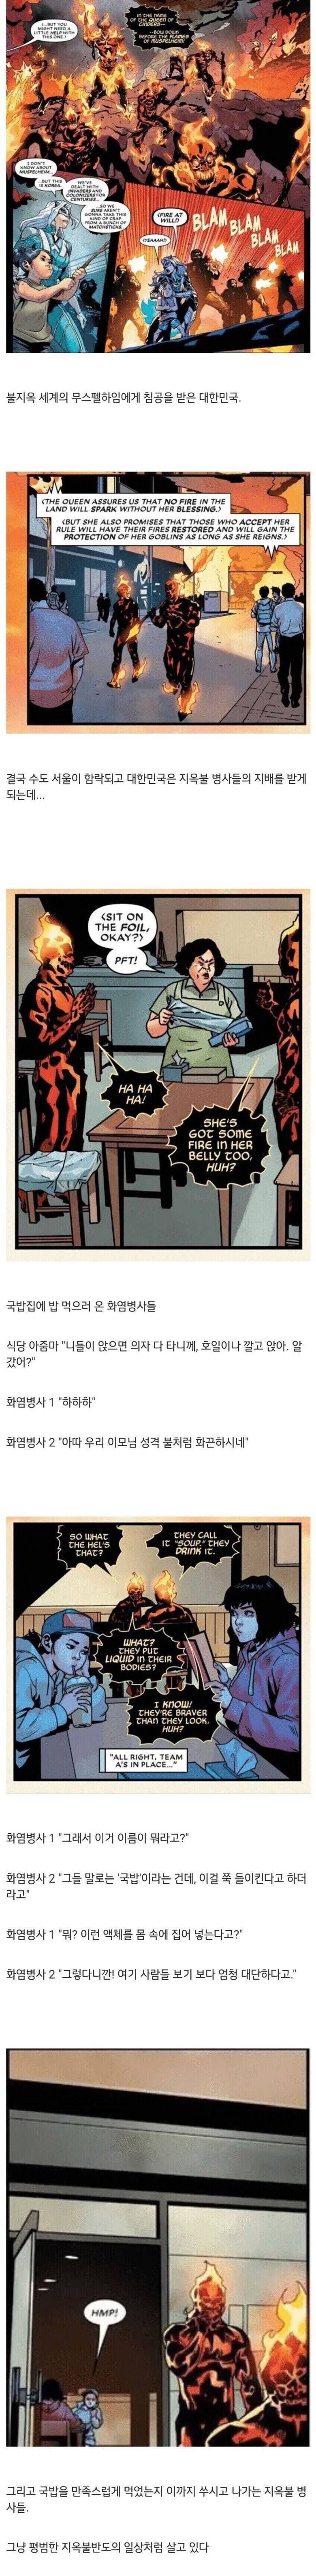 마블에 등장한 한국의 국밥.jpg